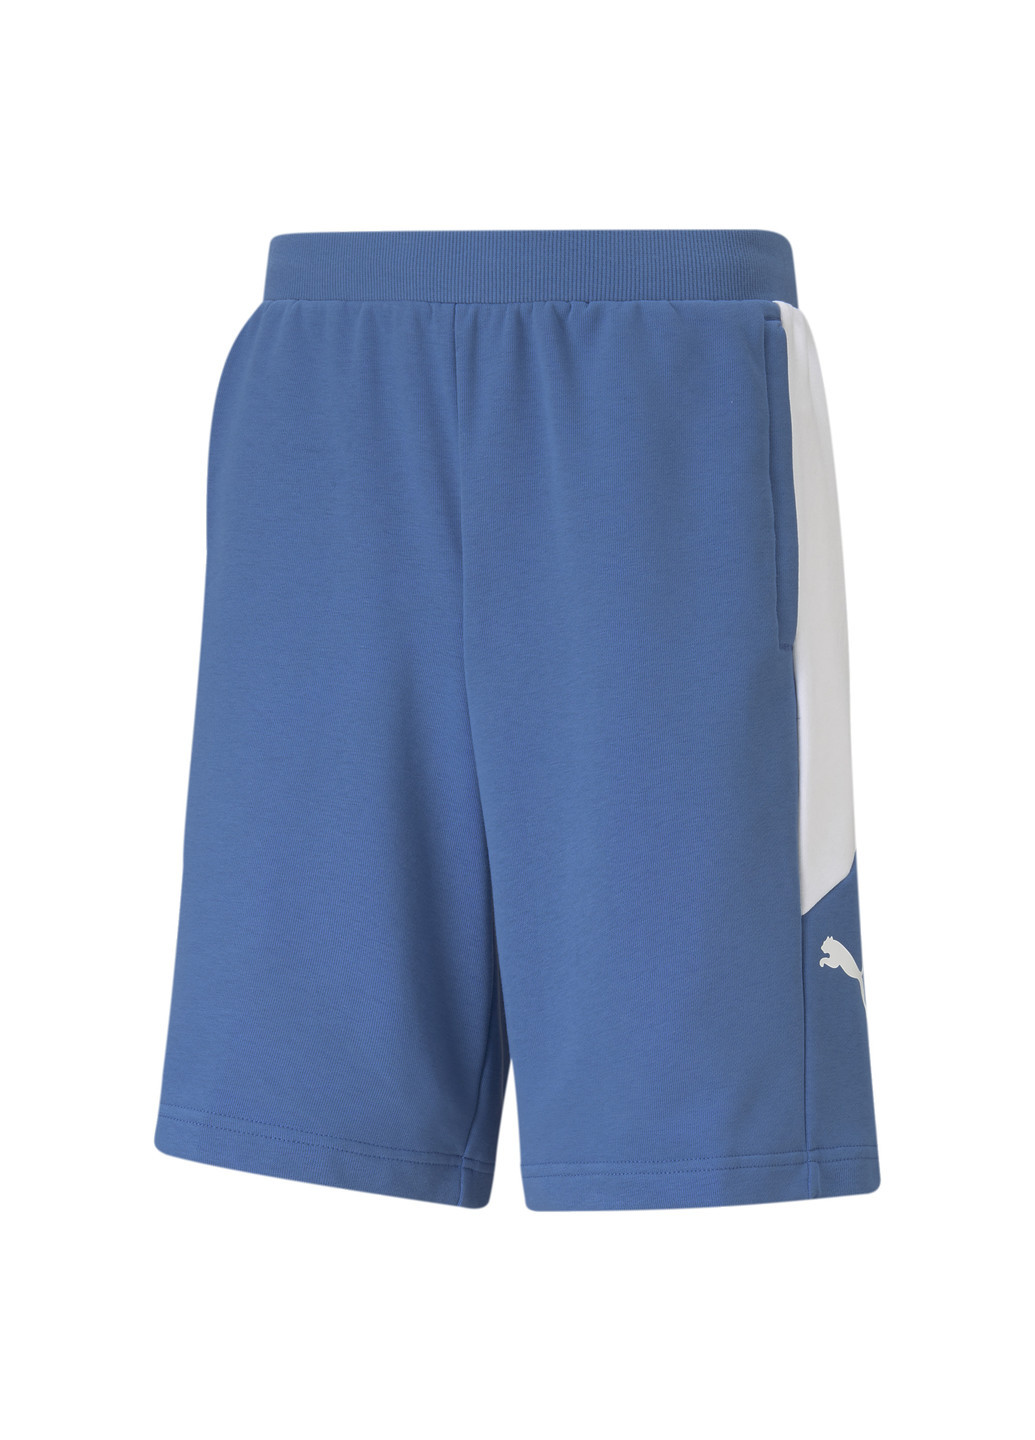 Шорты Modern Sports Men's Shorts Puma однотонные синие спортивные хлопок, полиэстер, эластан